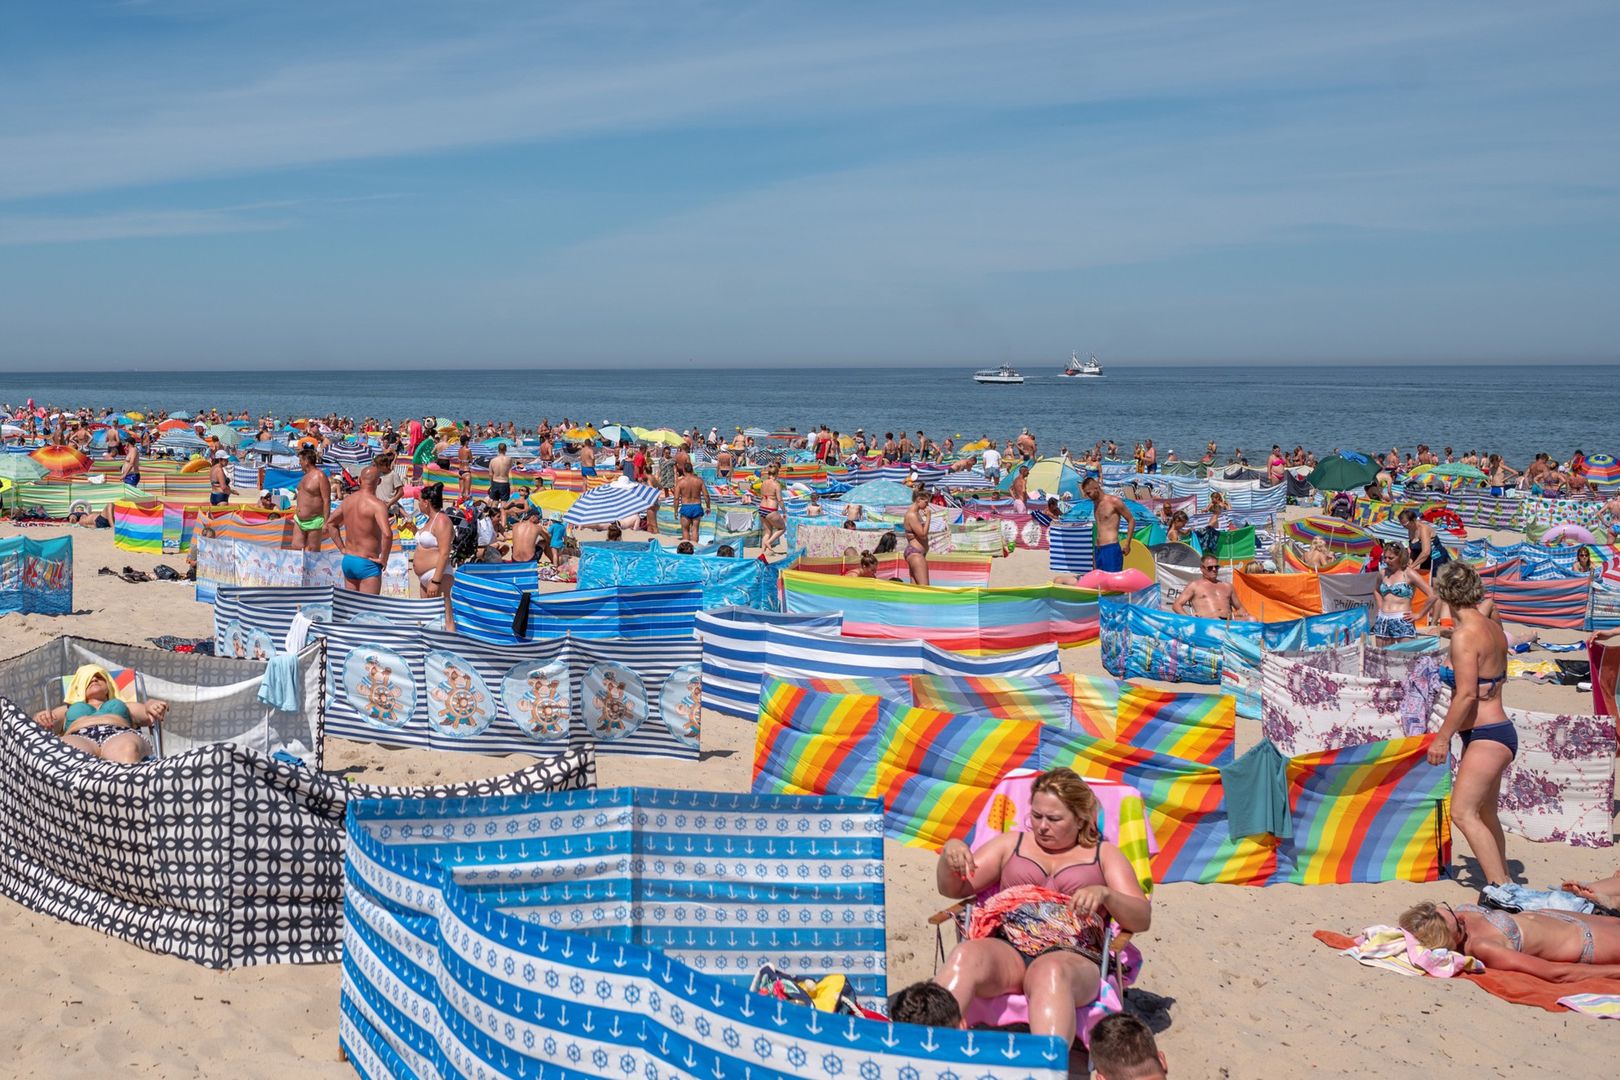 Gorszący widok na polskich plażach. Polacy mówią "dość". Chcą zmian